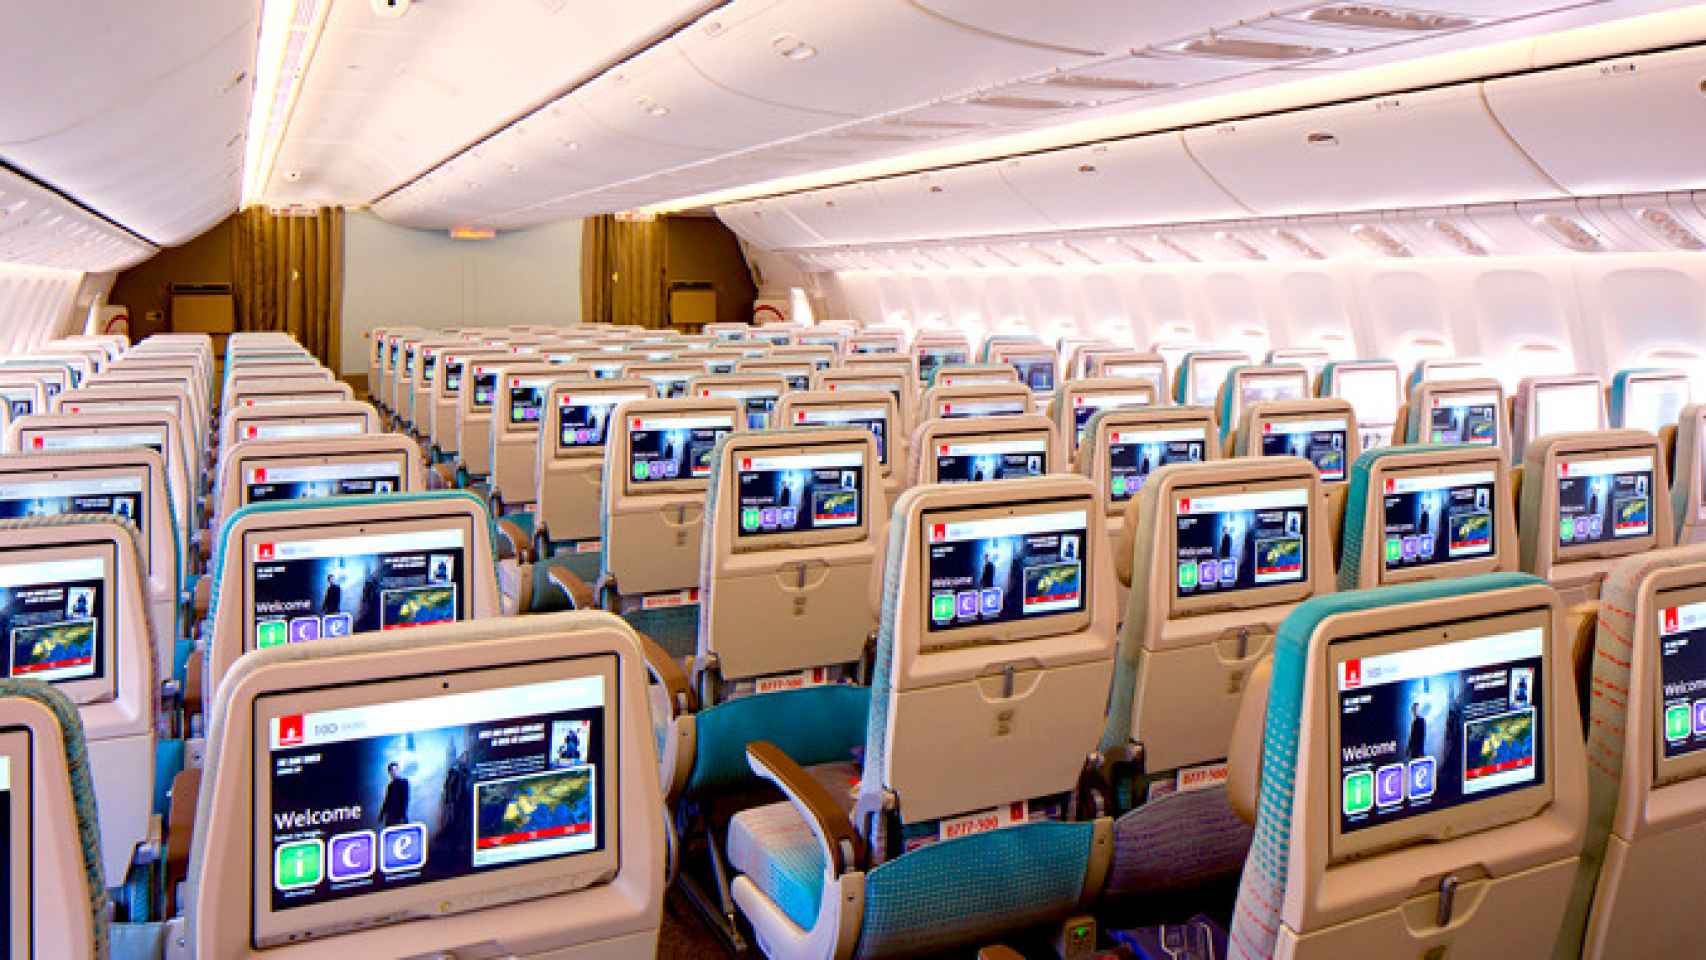 Ice System de Emirates en las pantallas de los asientos, uno de los sistemas de entretenimiento más completos / EMIRATES